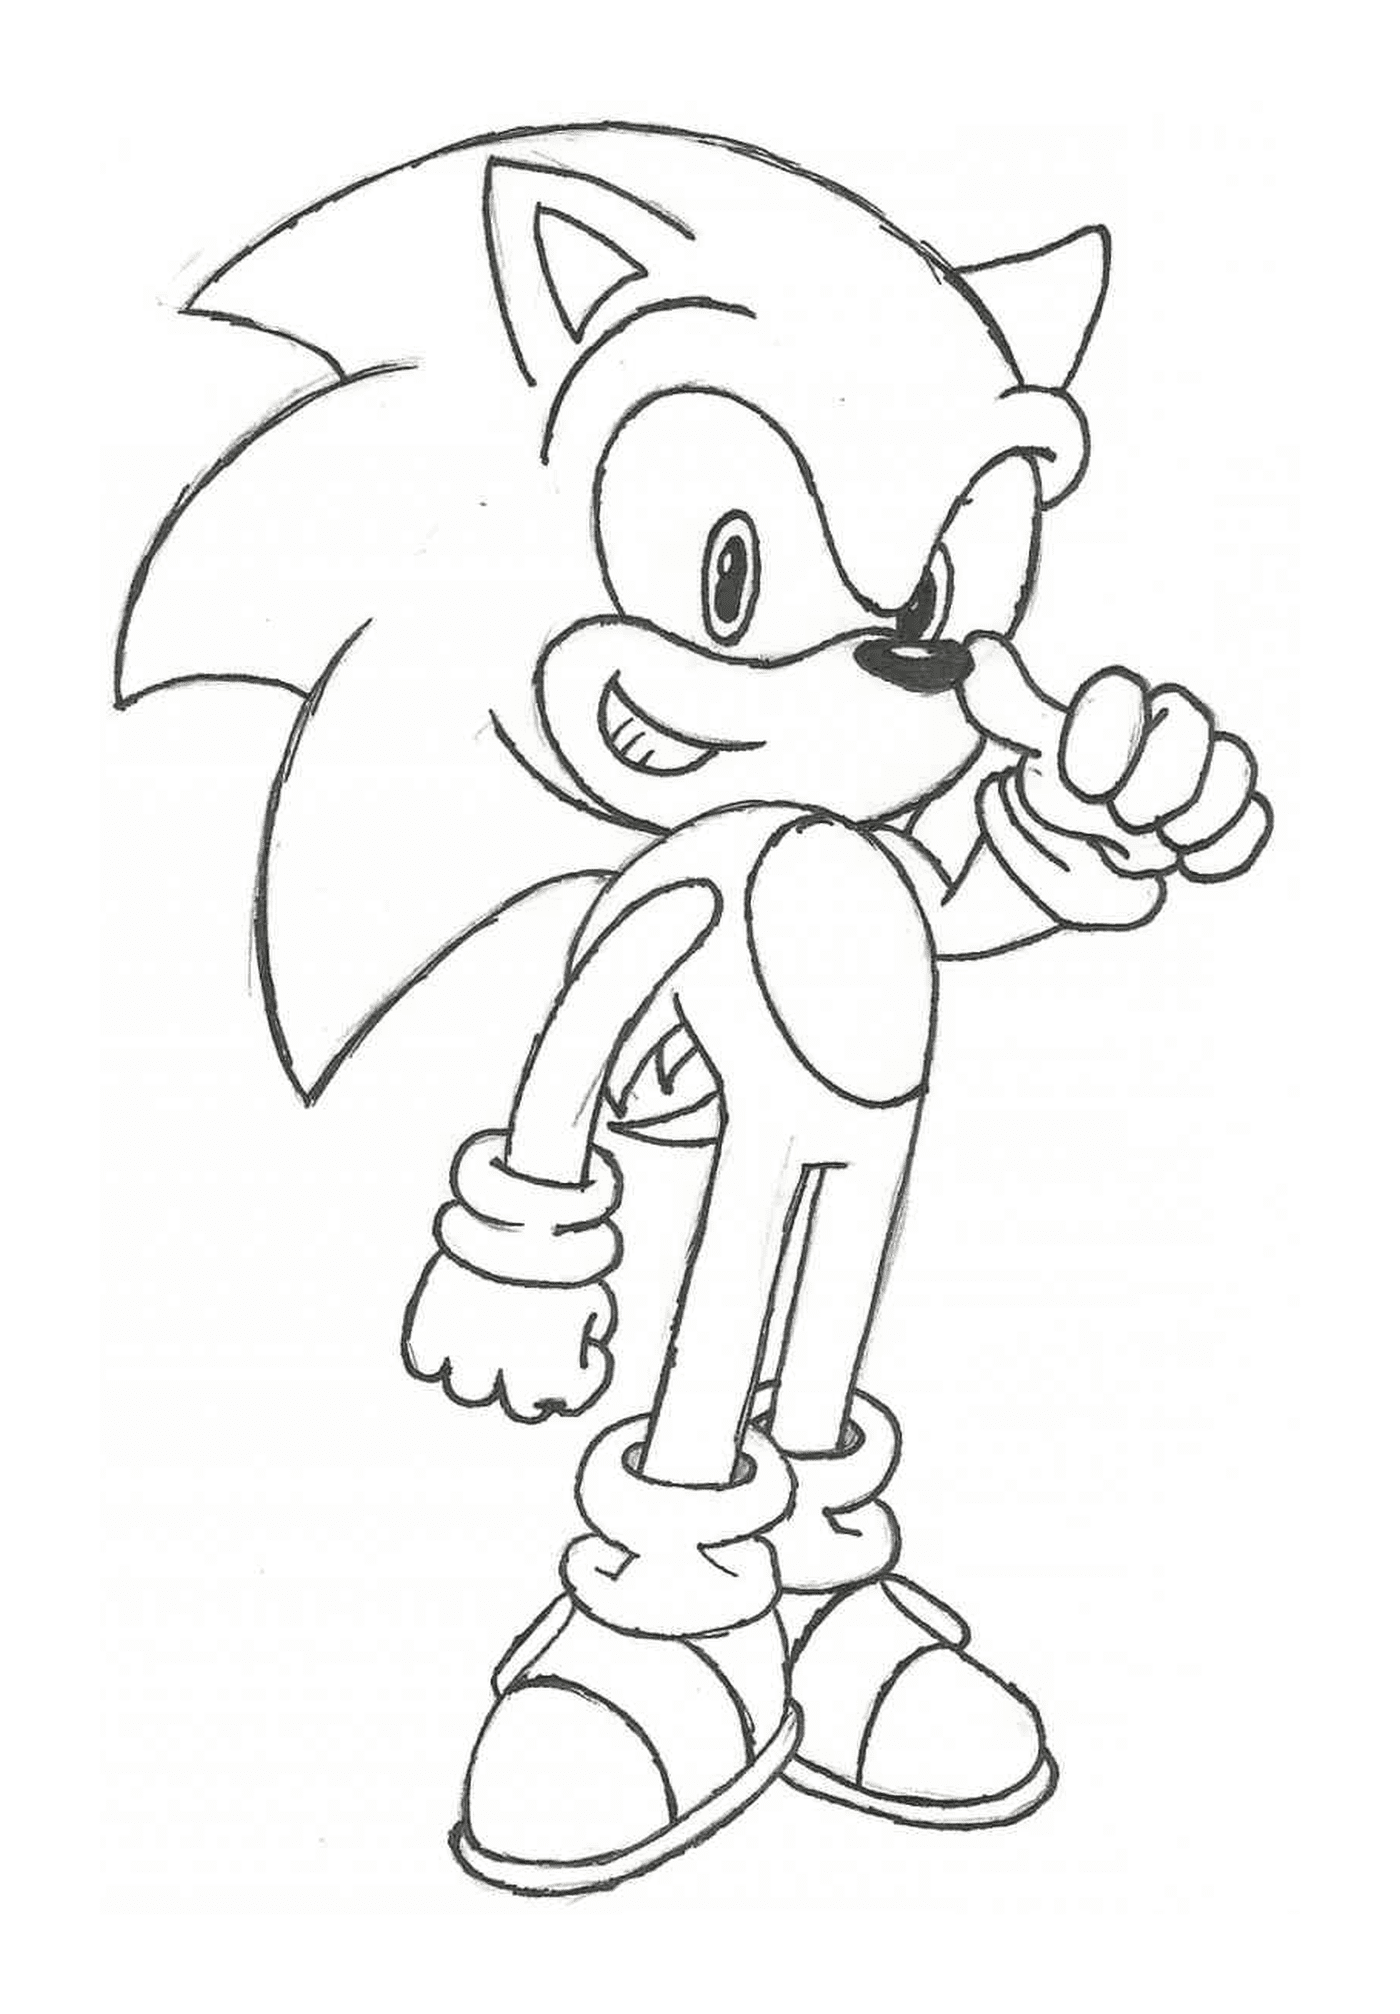  Sonic com uma pose heroica 